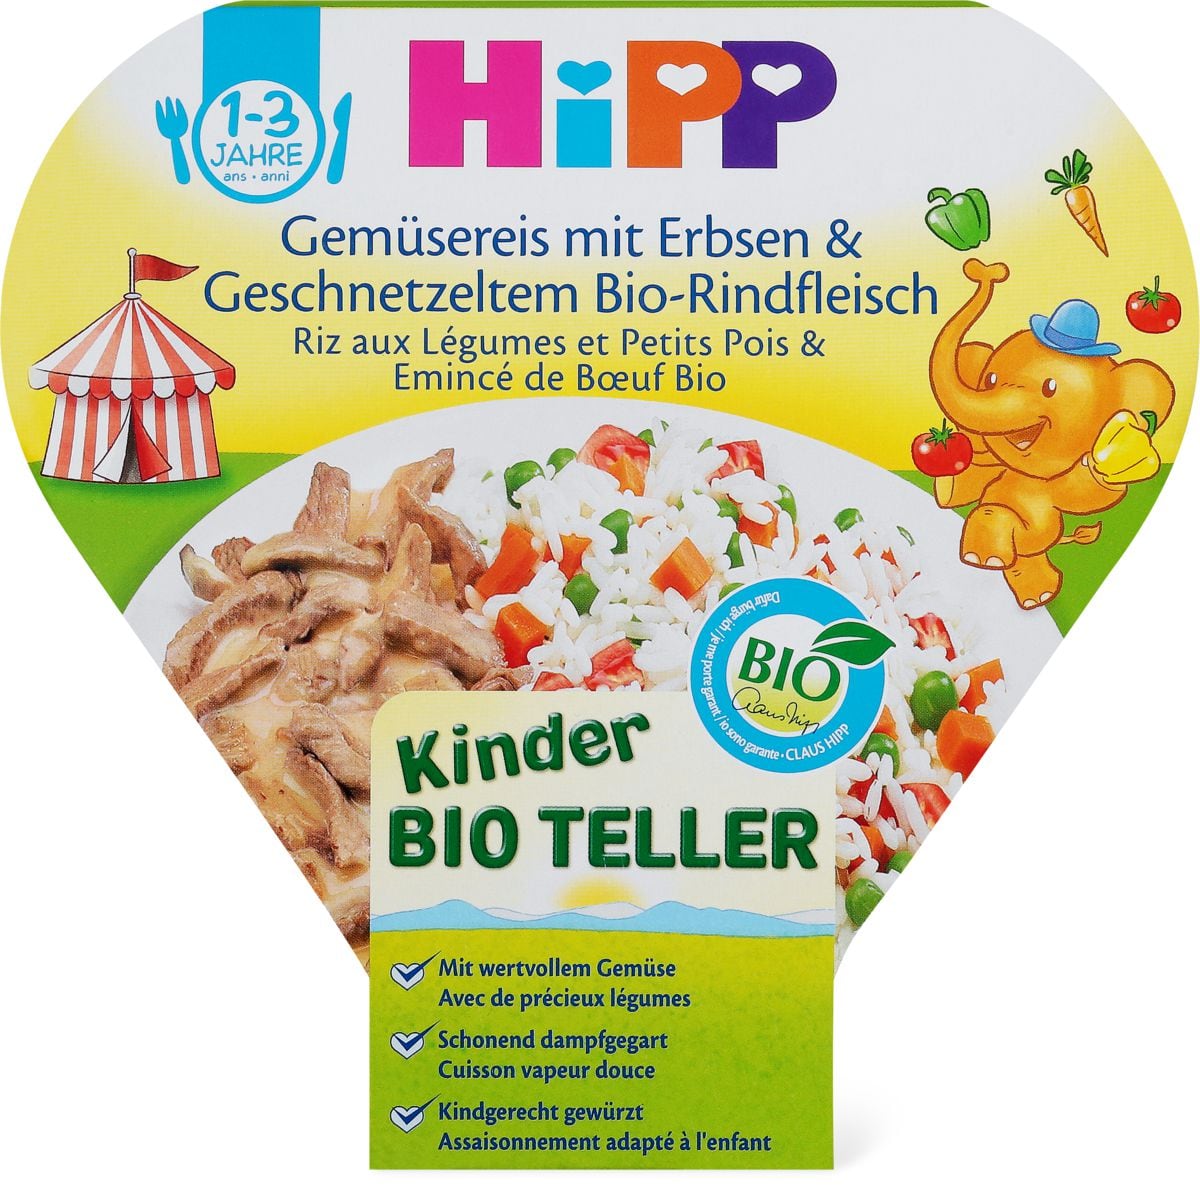 Hipp Kinderteller Gemusereis Erbsen Rindfleisch Migros